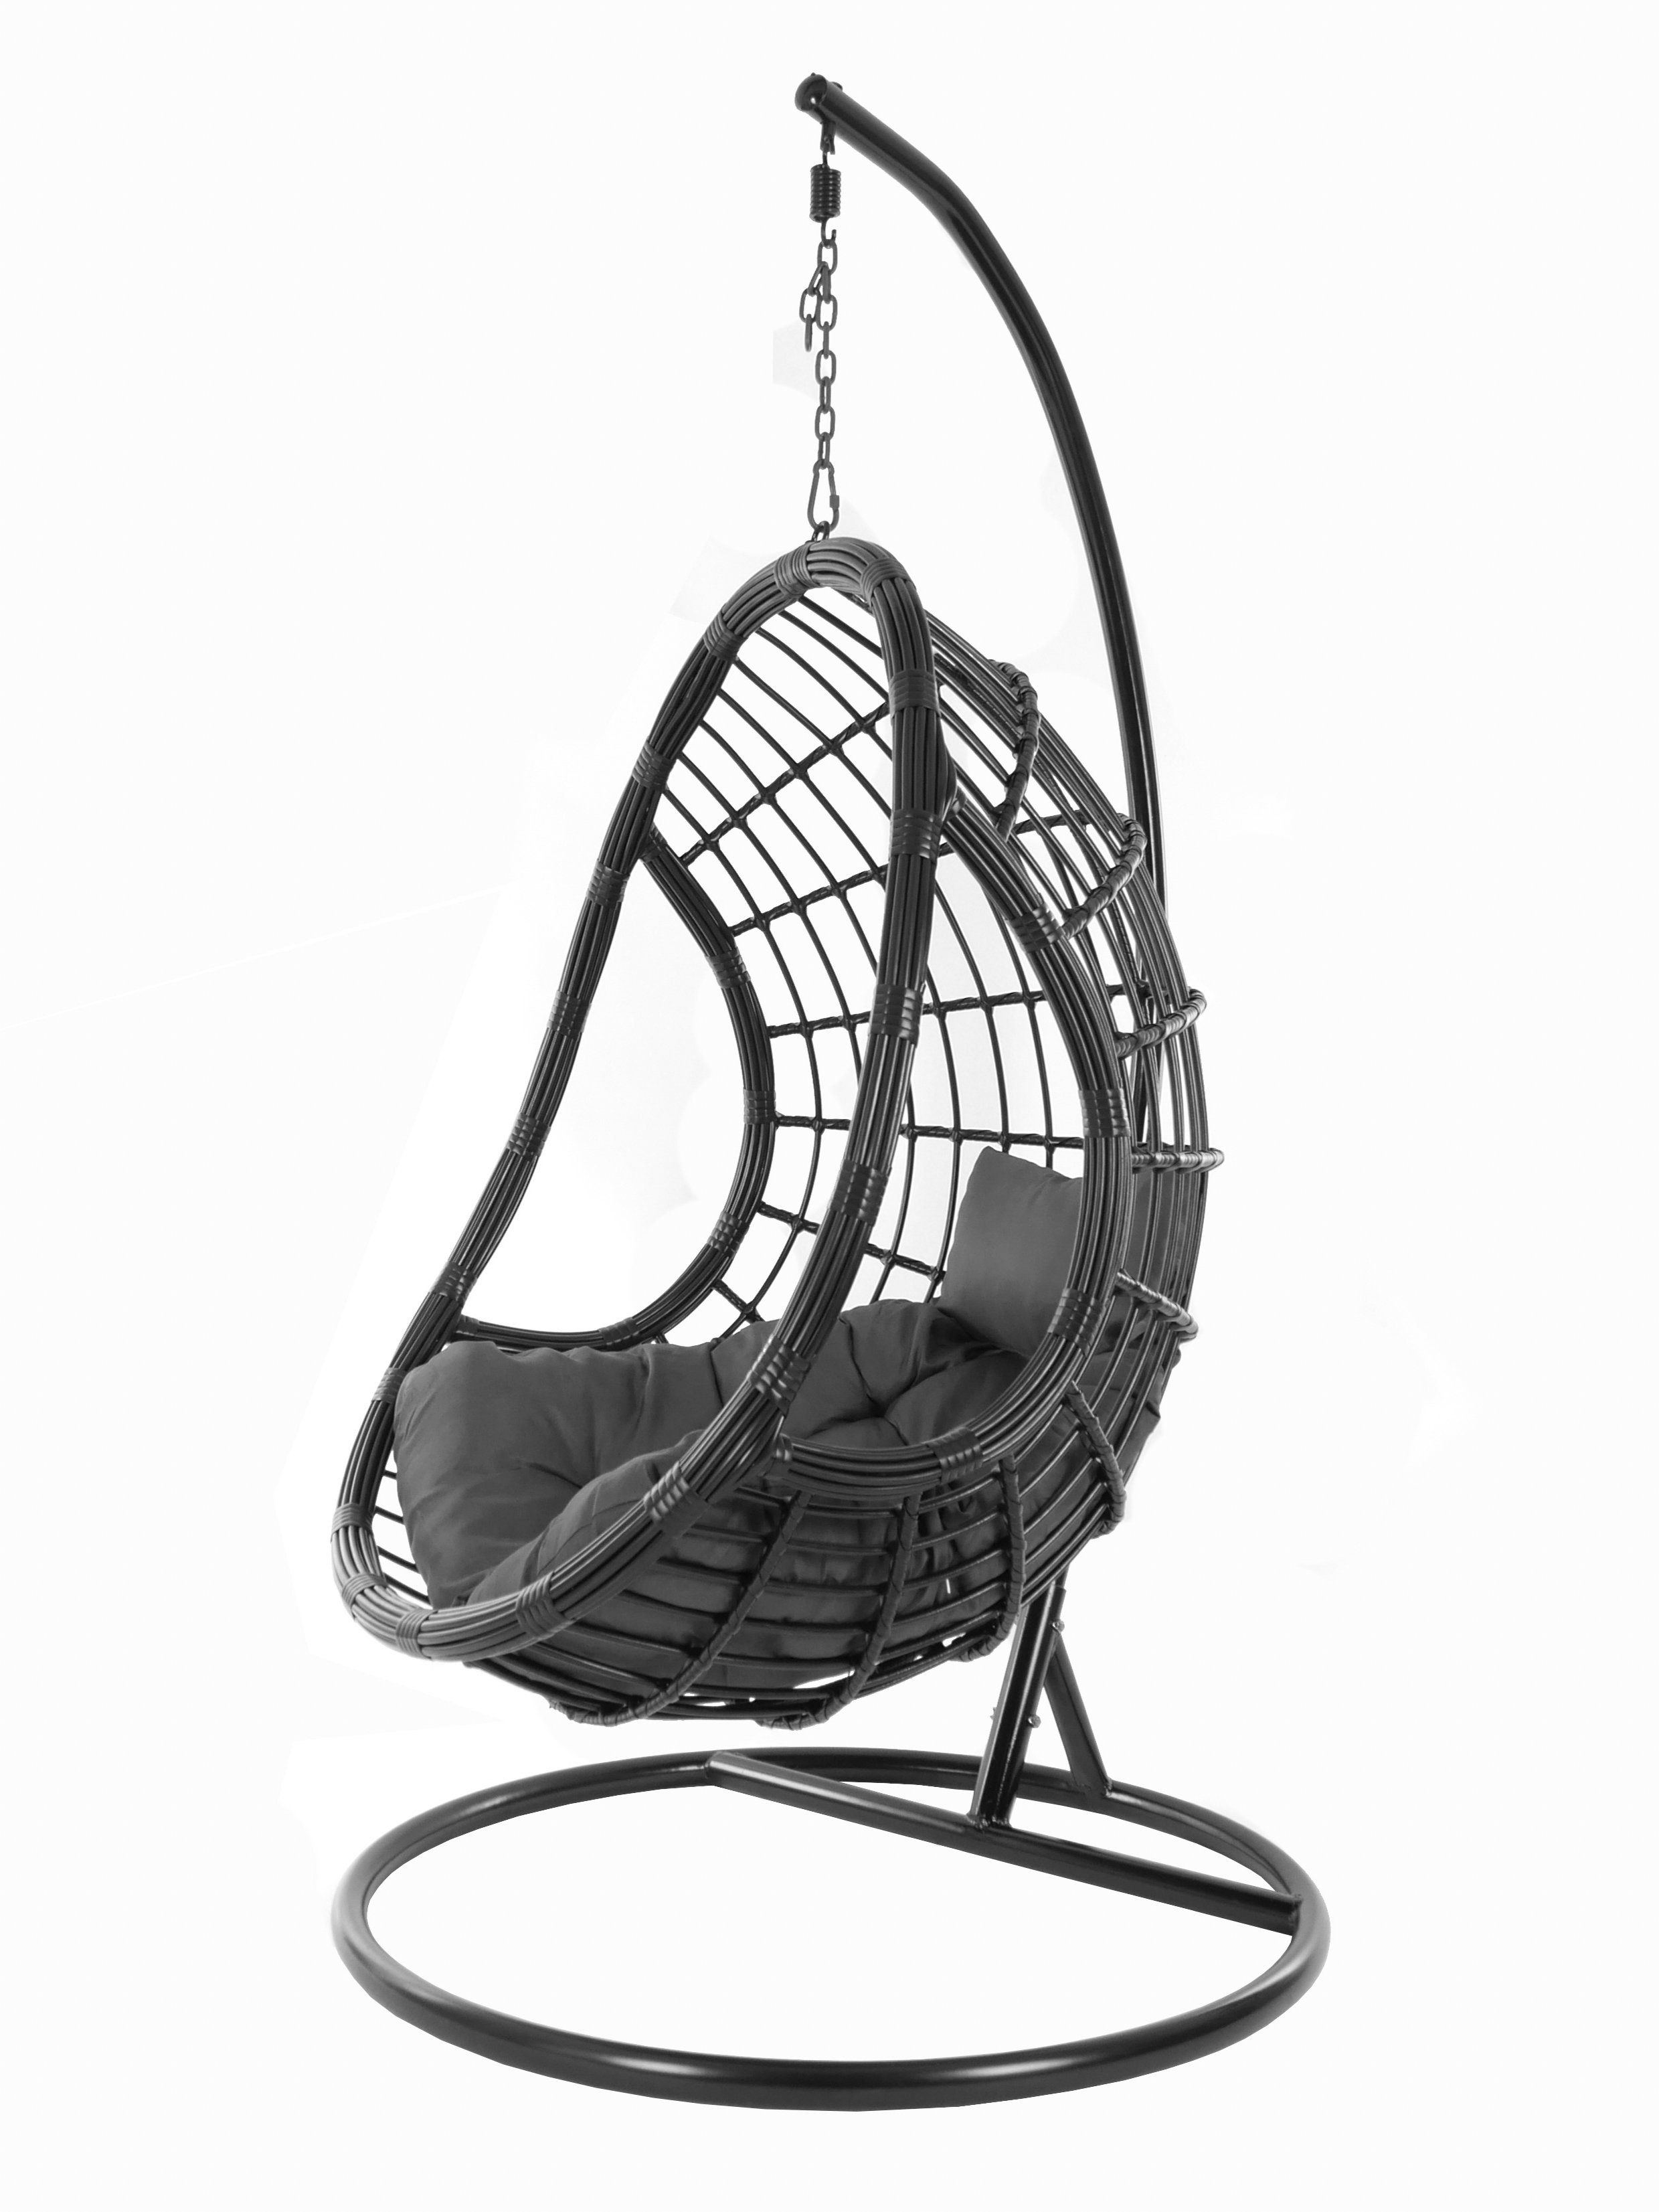 KIDEO Hängesessel PALMANOVA black, Swing Chair, schwarz, Loungemöbel, Hängesessel mit Gestell und Kissen, Schwebesessel, edles Design dunkelgrau (8999 shadow)